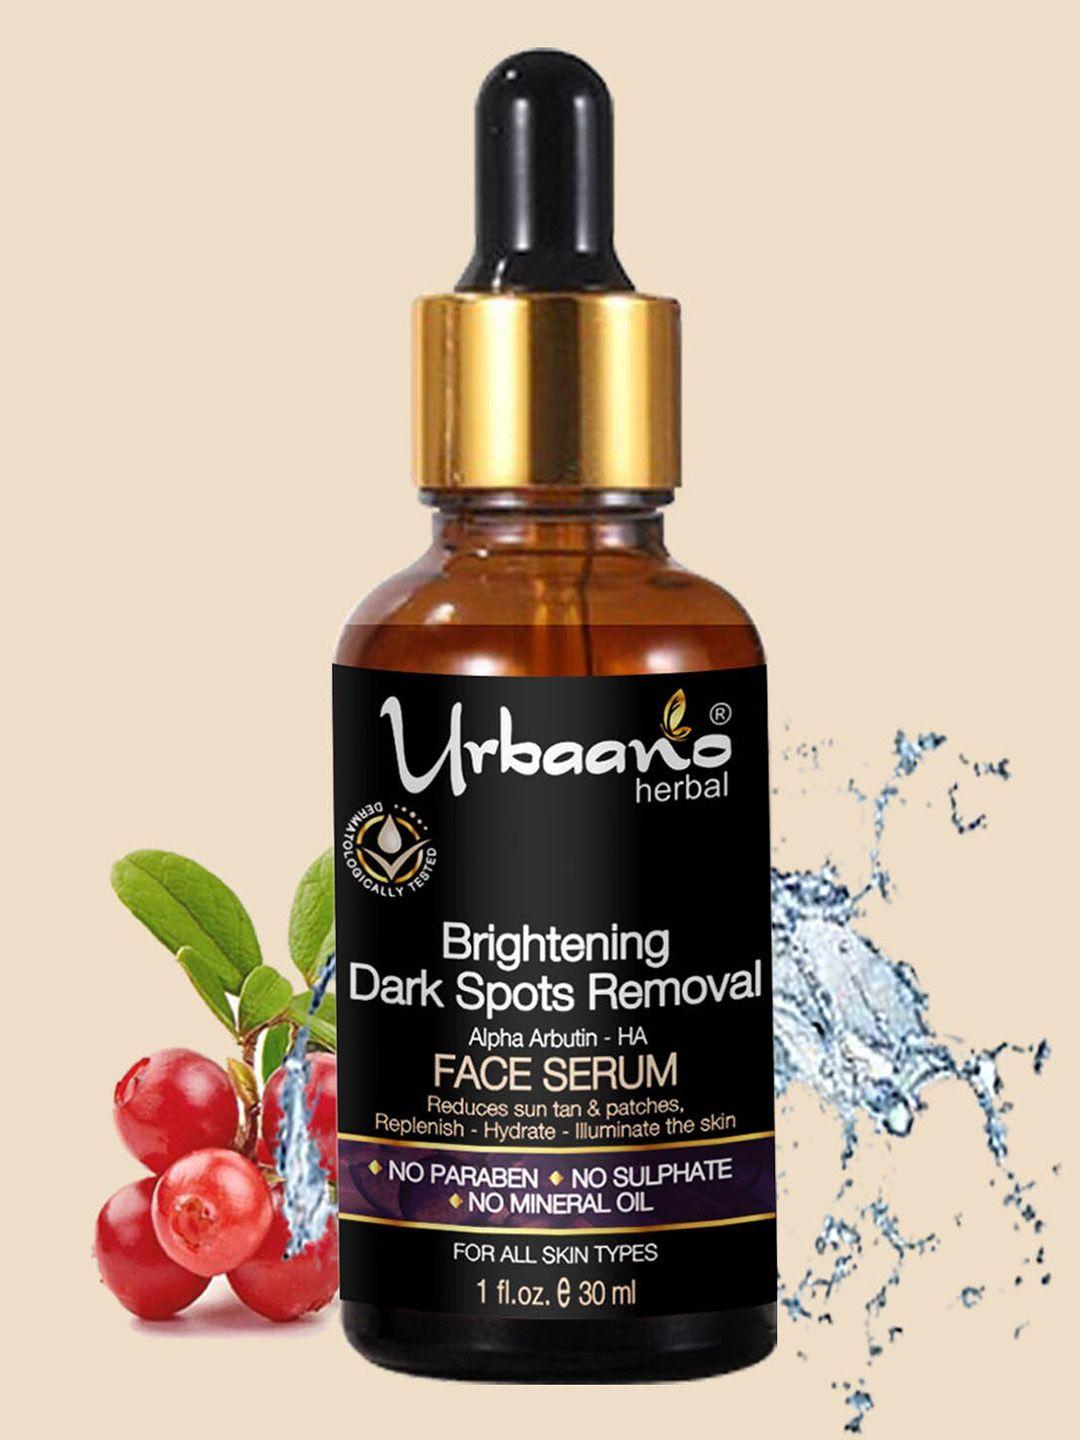 urbaano herbal brightening dark spots removal alpha arbutin - ha face serum - 30ml